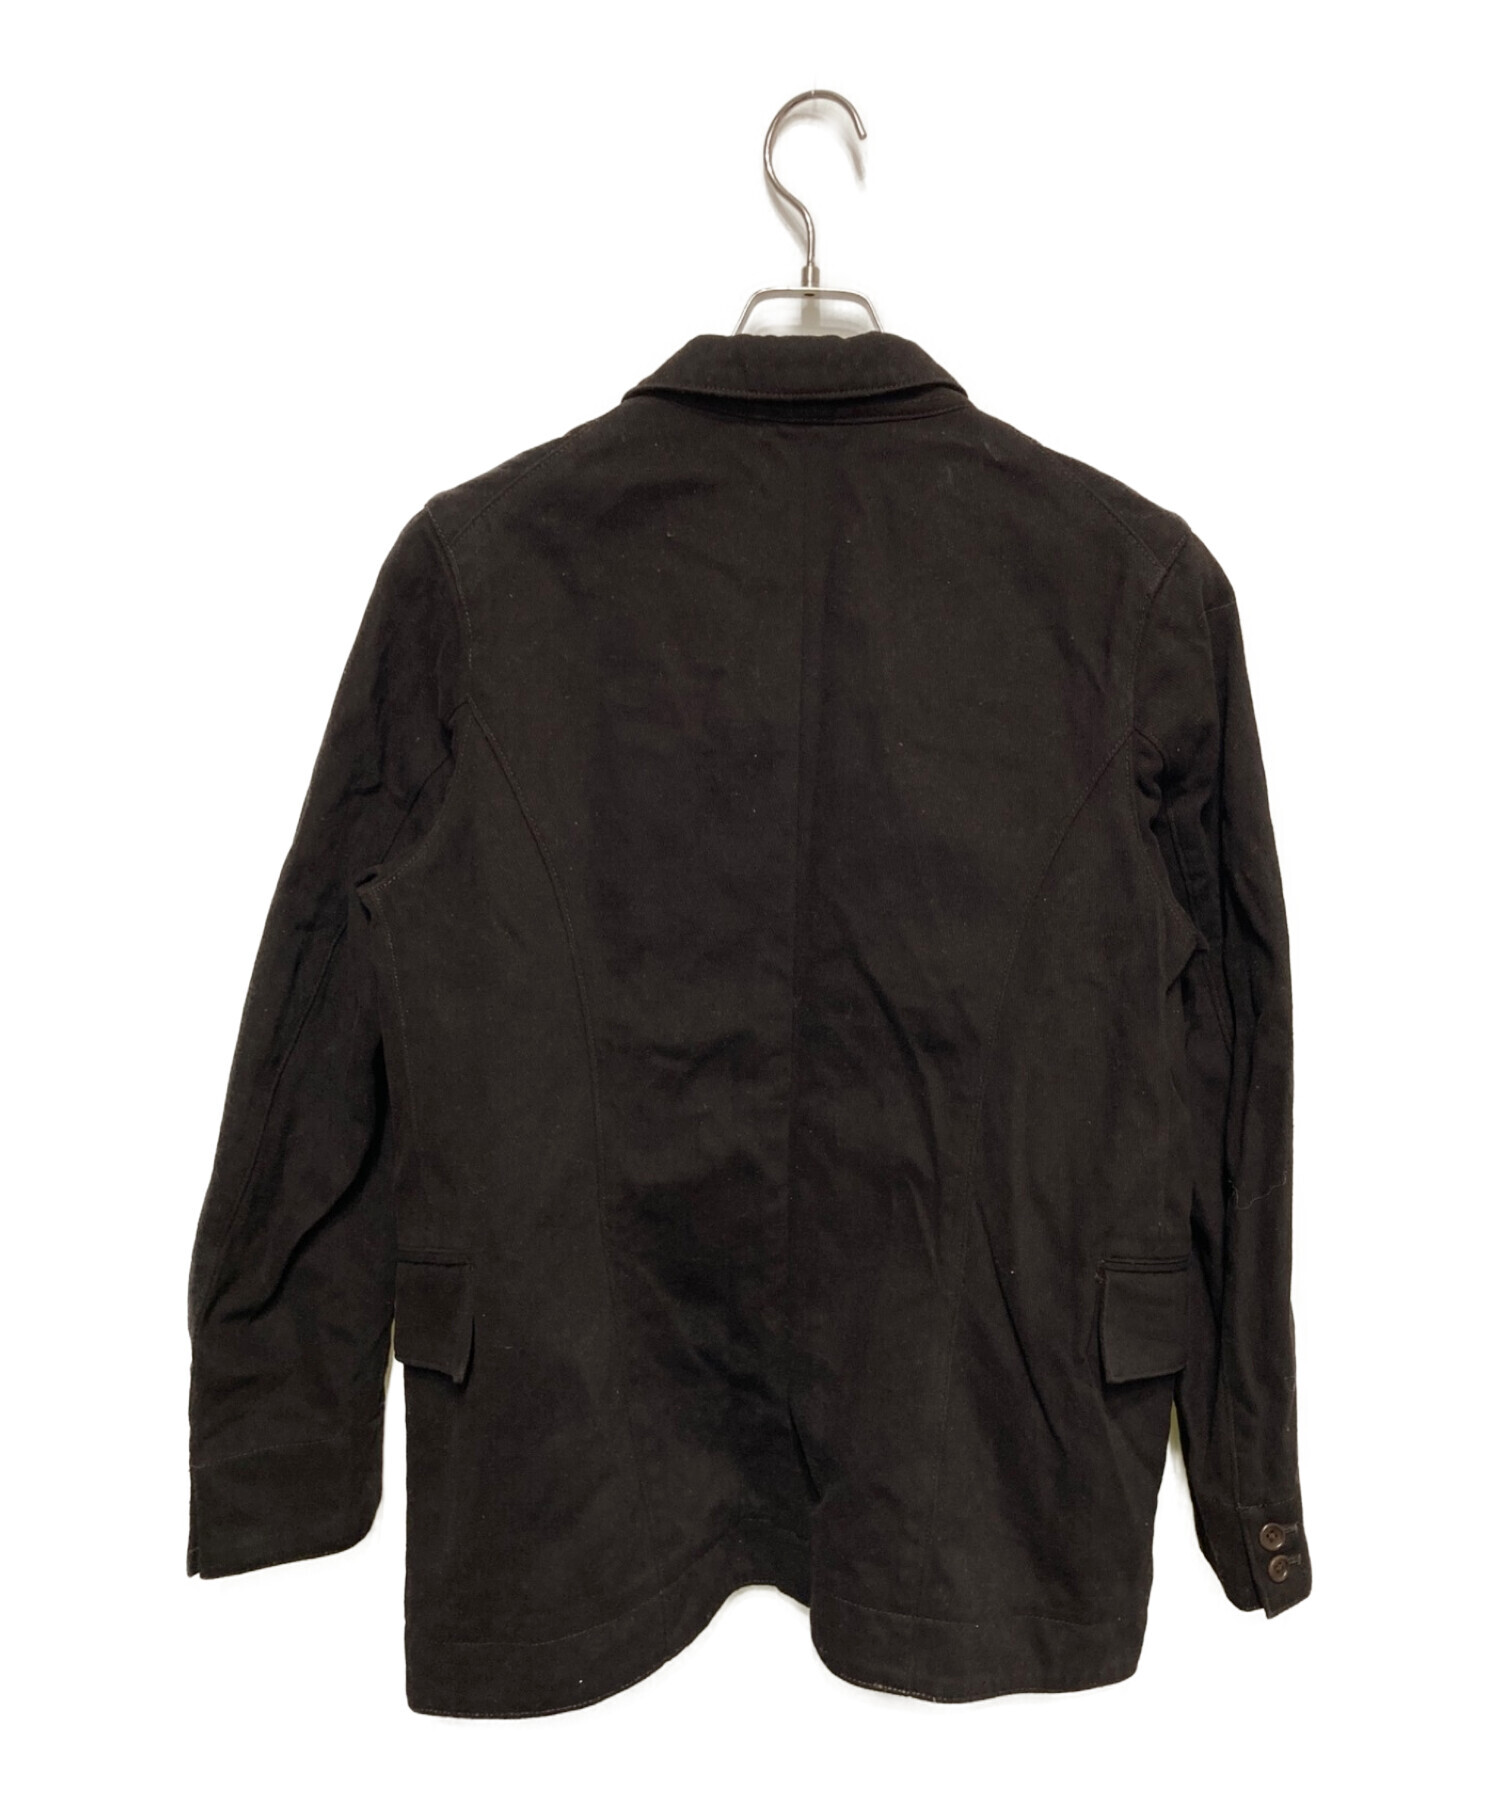 日本在庫中古 Django Atour ジャンゴアトゥール コットンジャケット ベージュ ブラウン Sサイズ 立ち襟 隠しボタン 長袖 H16219 Sサイズ